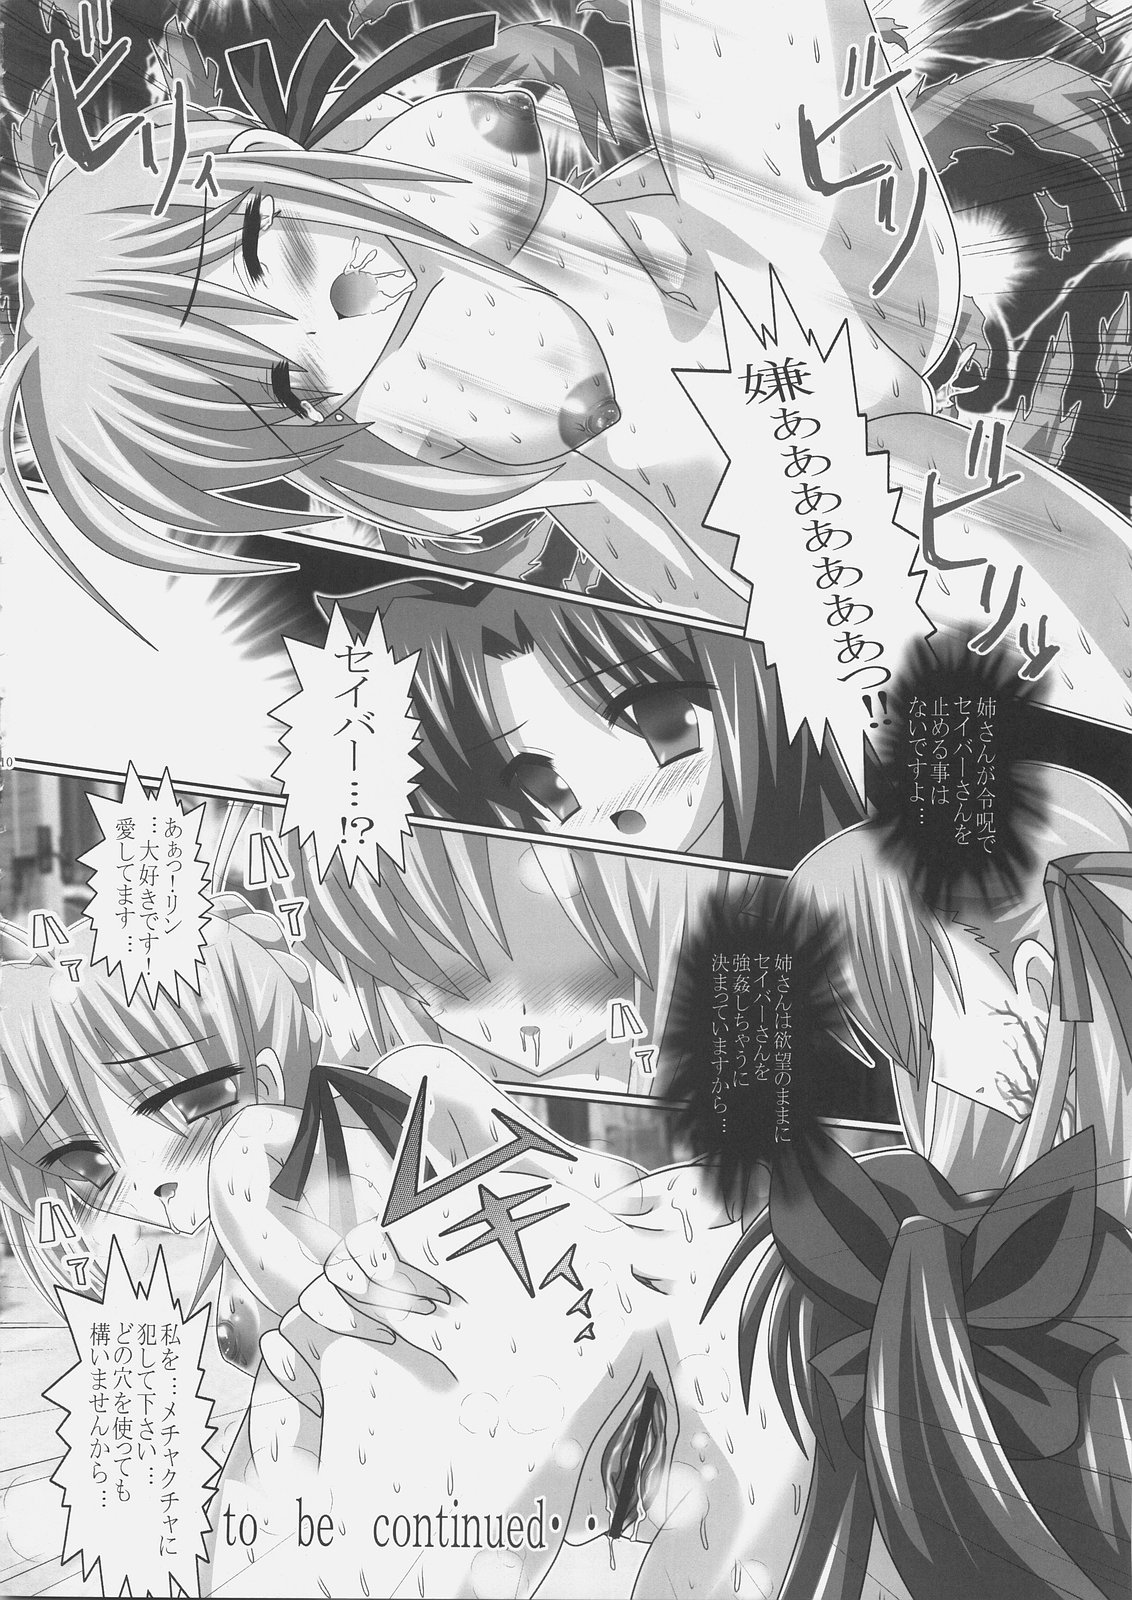 (僕だけの笑顔) [レズ萌え!、百合萌え (お湯の香り、みどりん)] リンエロ☆ミックス 今すぐダウンロード!! (Fate/stay night)